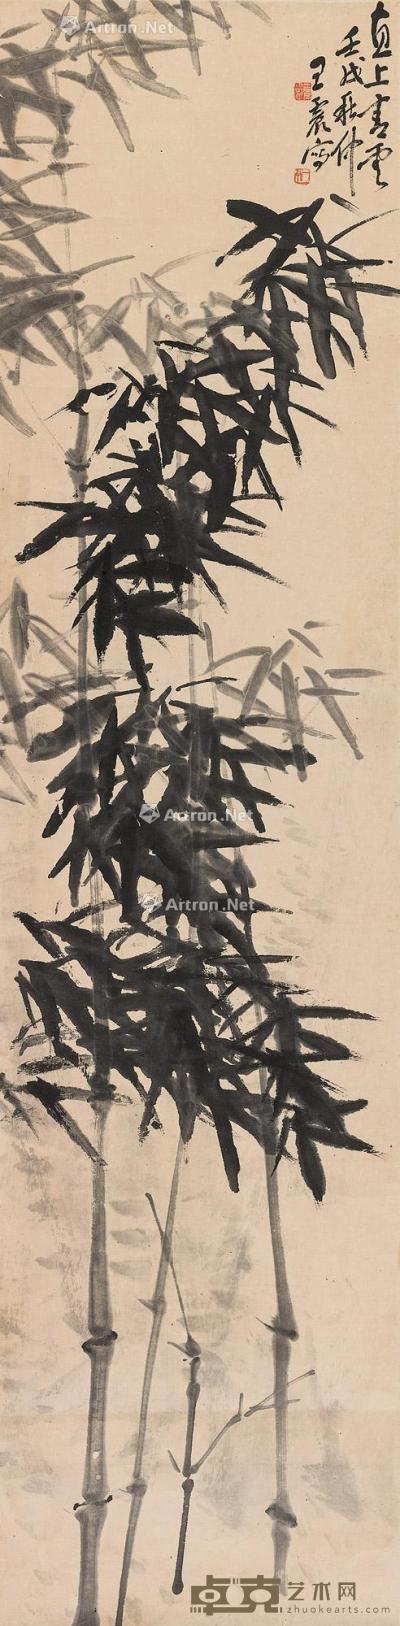  壬戌（1922年）作 墨竹图 立轴 水墨纸本 137.5×33.5cm